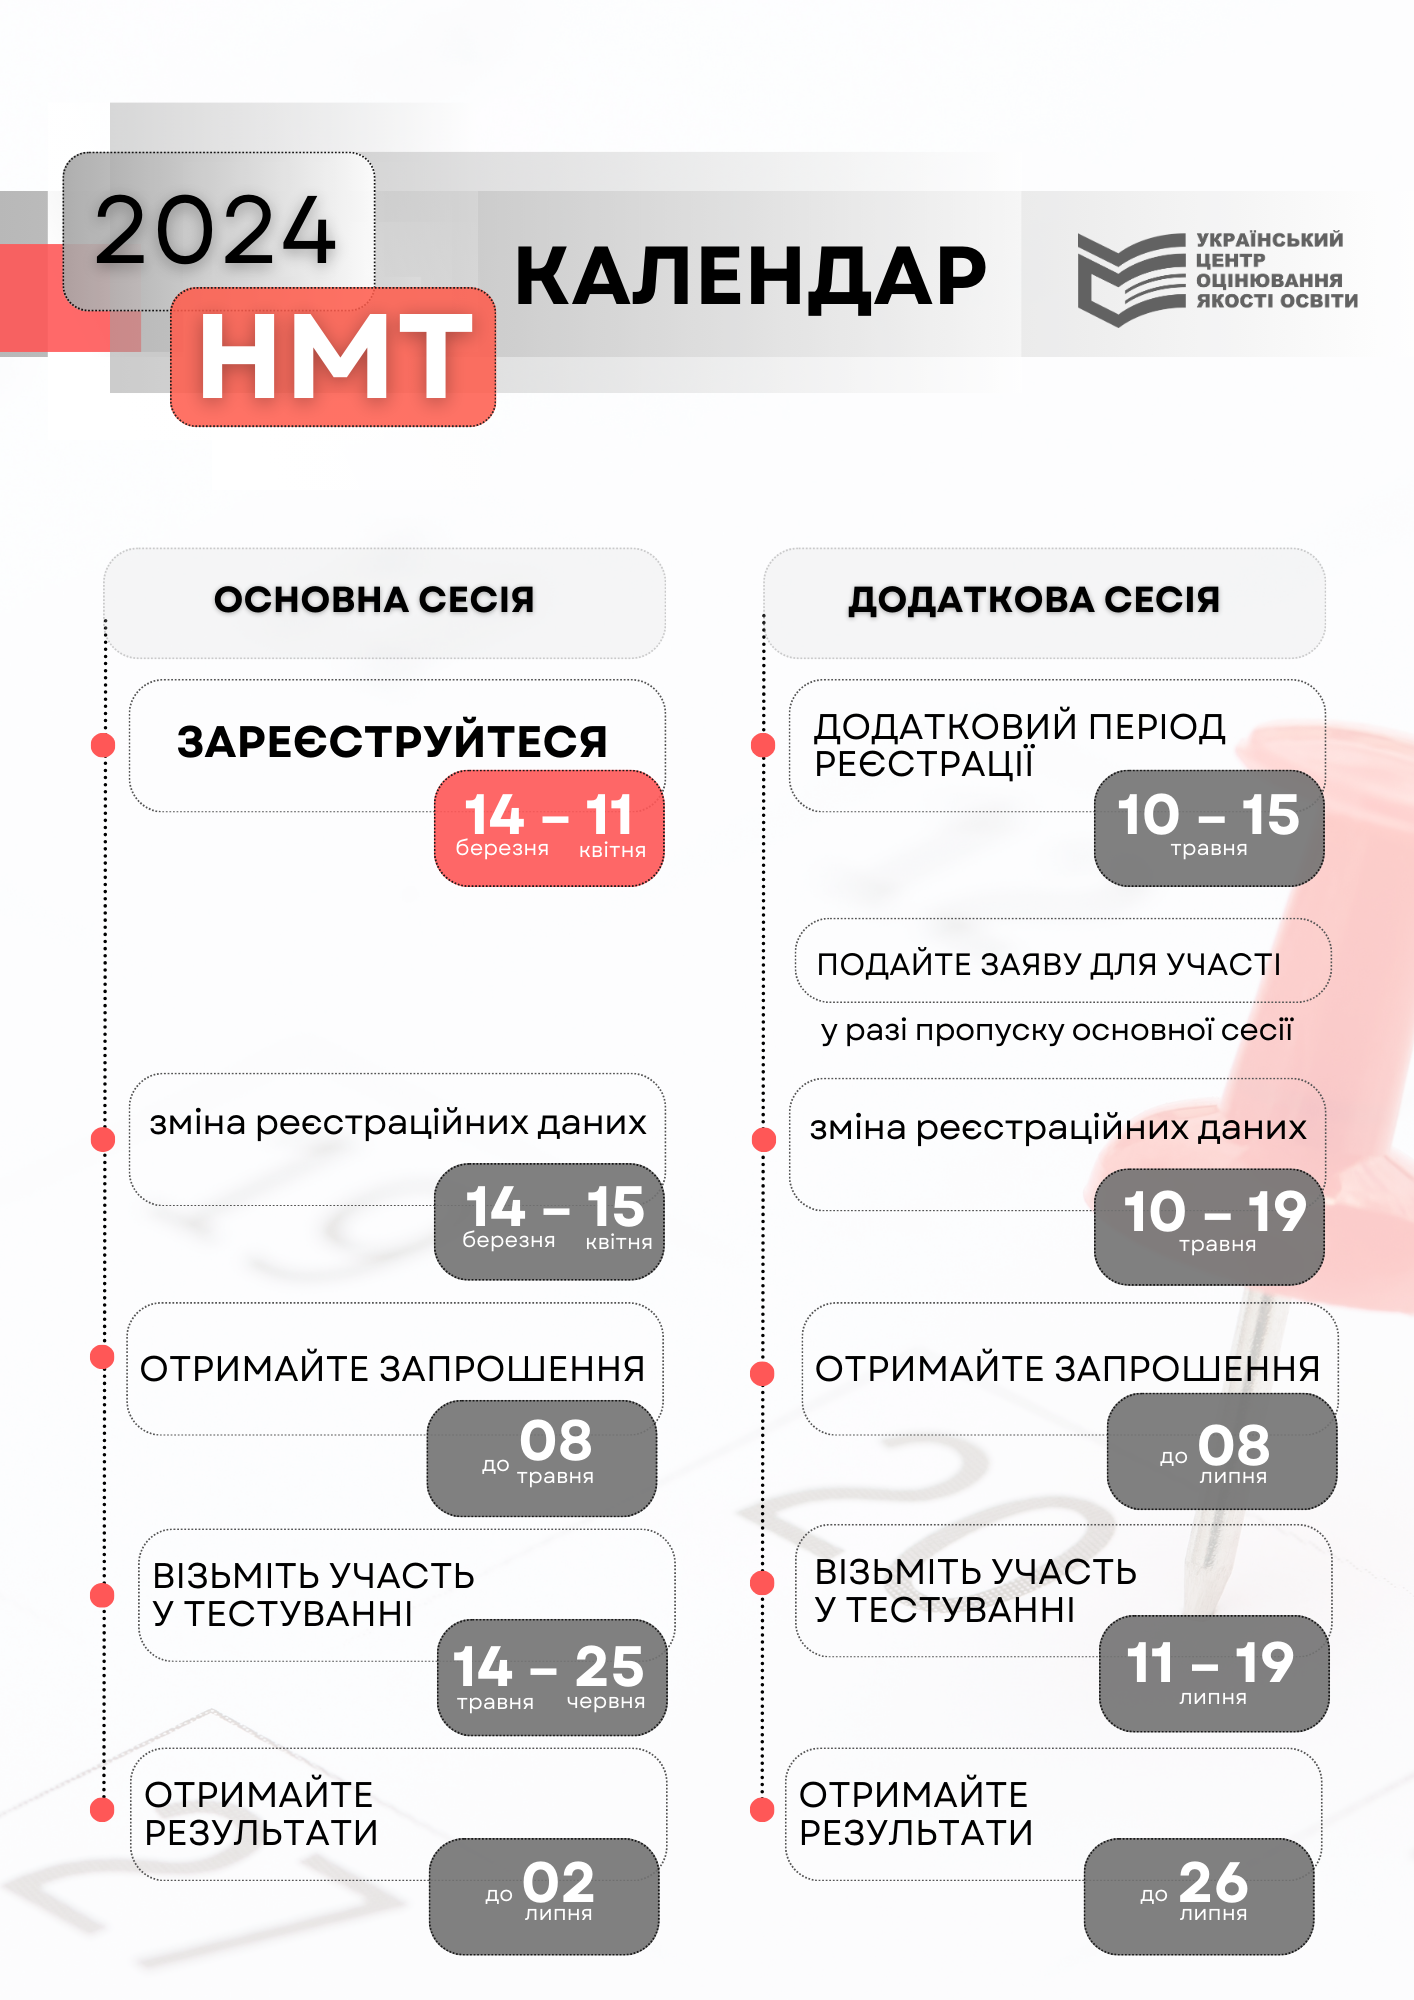 МОН Украины утвердило календарный план проведения НМТ-2024